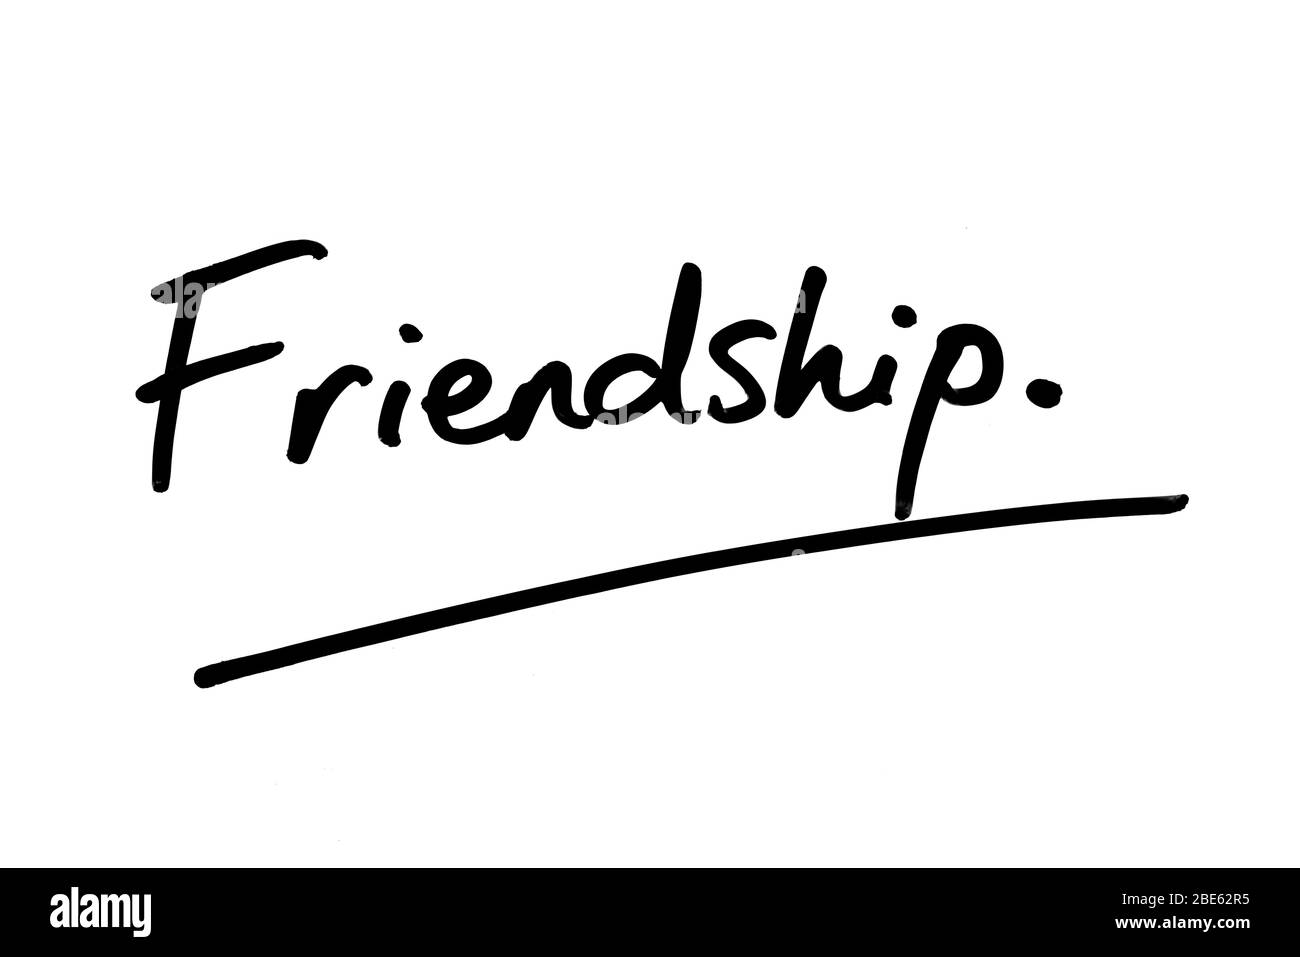 Friendship handwritten on a white background. Stock Photo